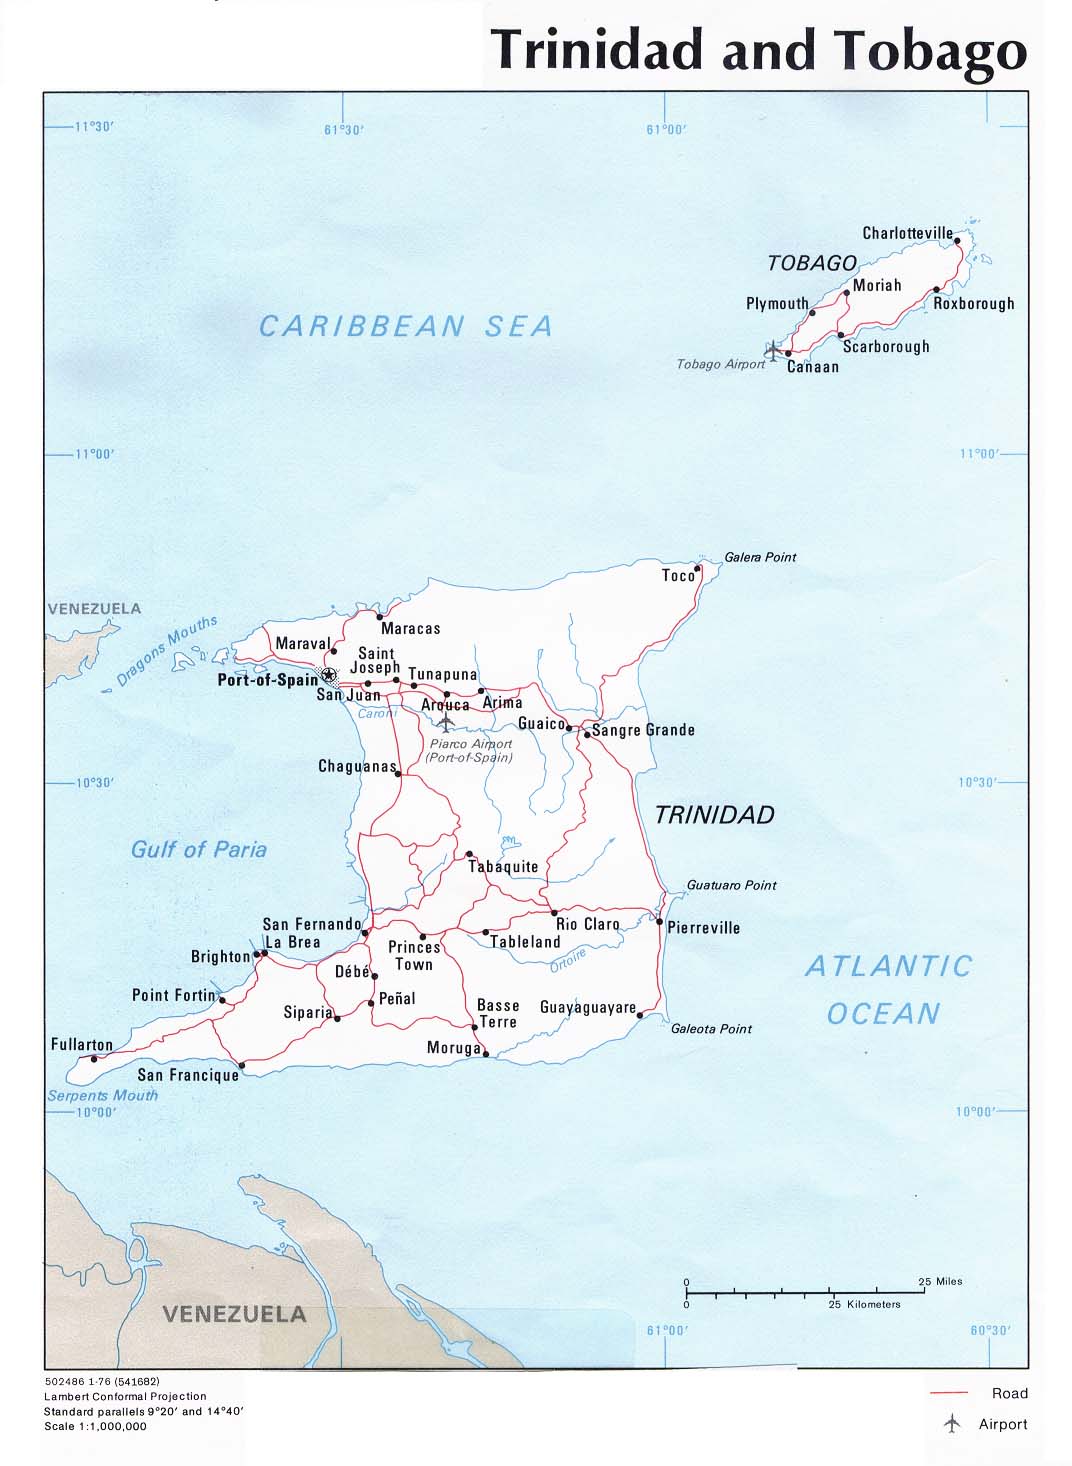 Mapa Político de Trinidad y Tobago